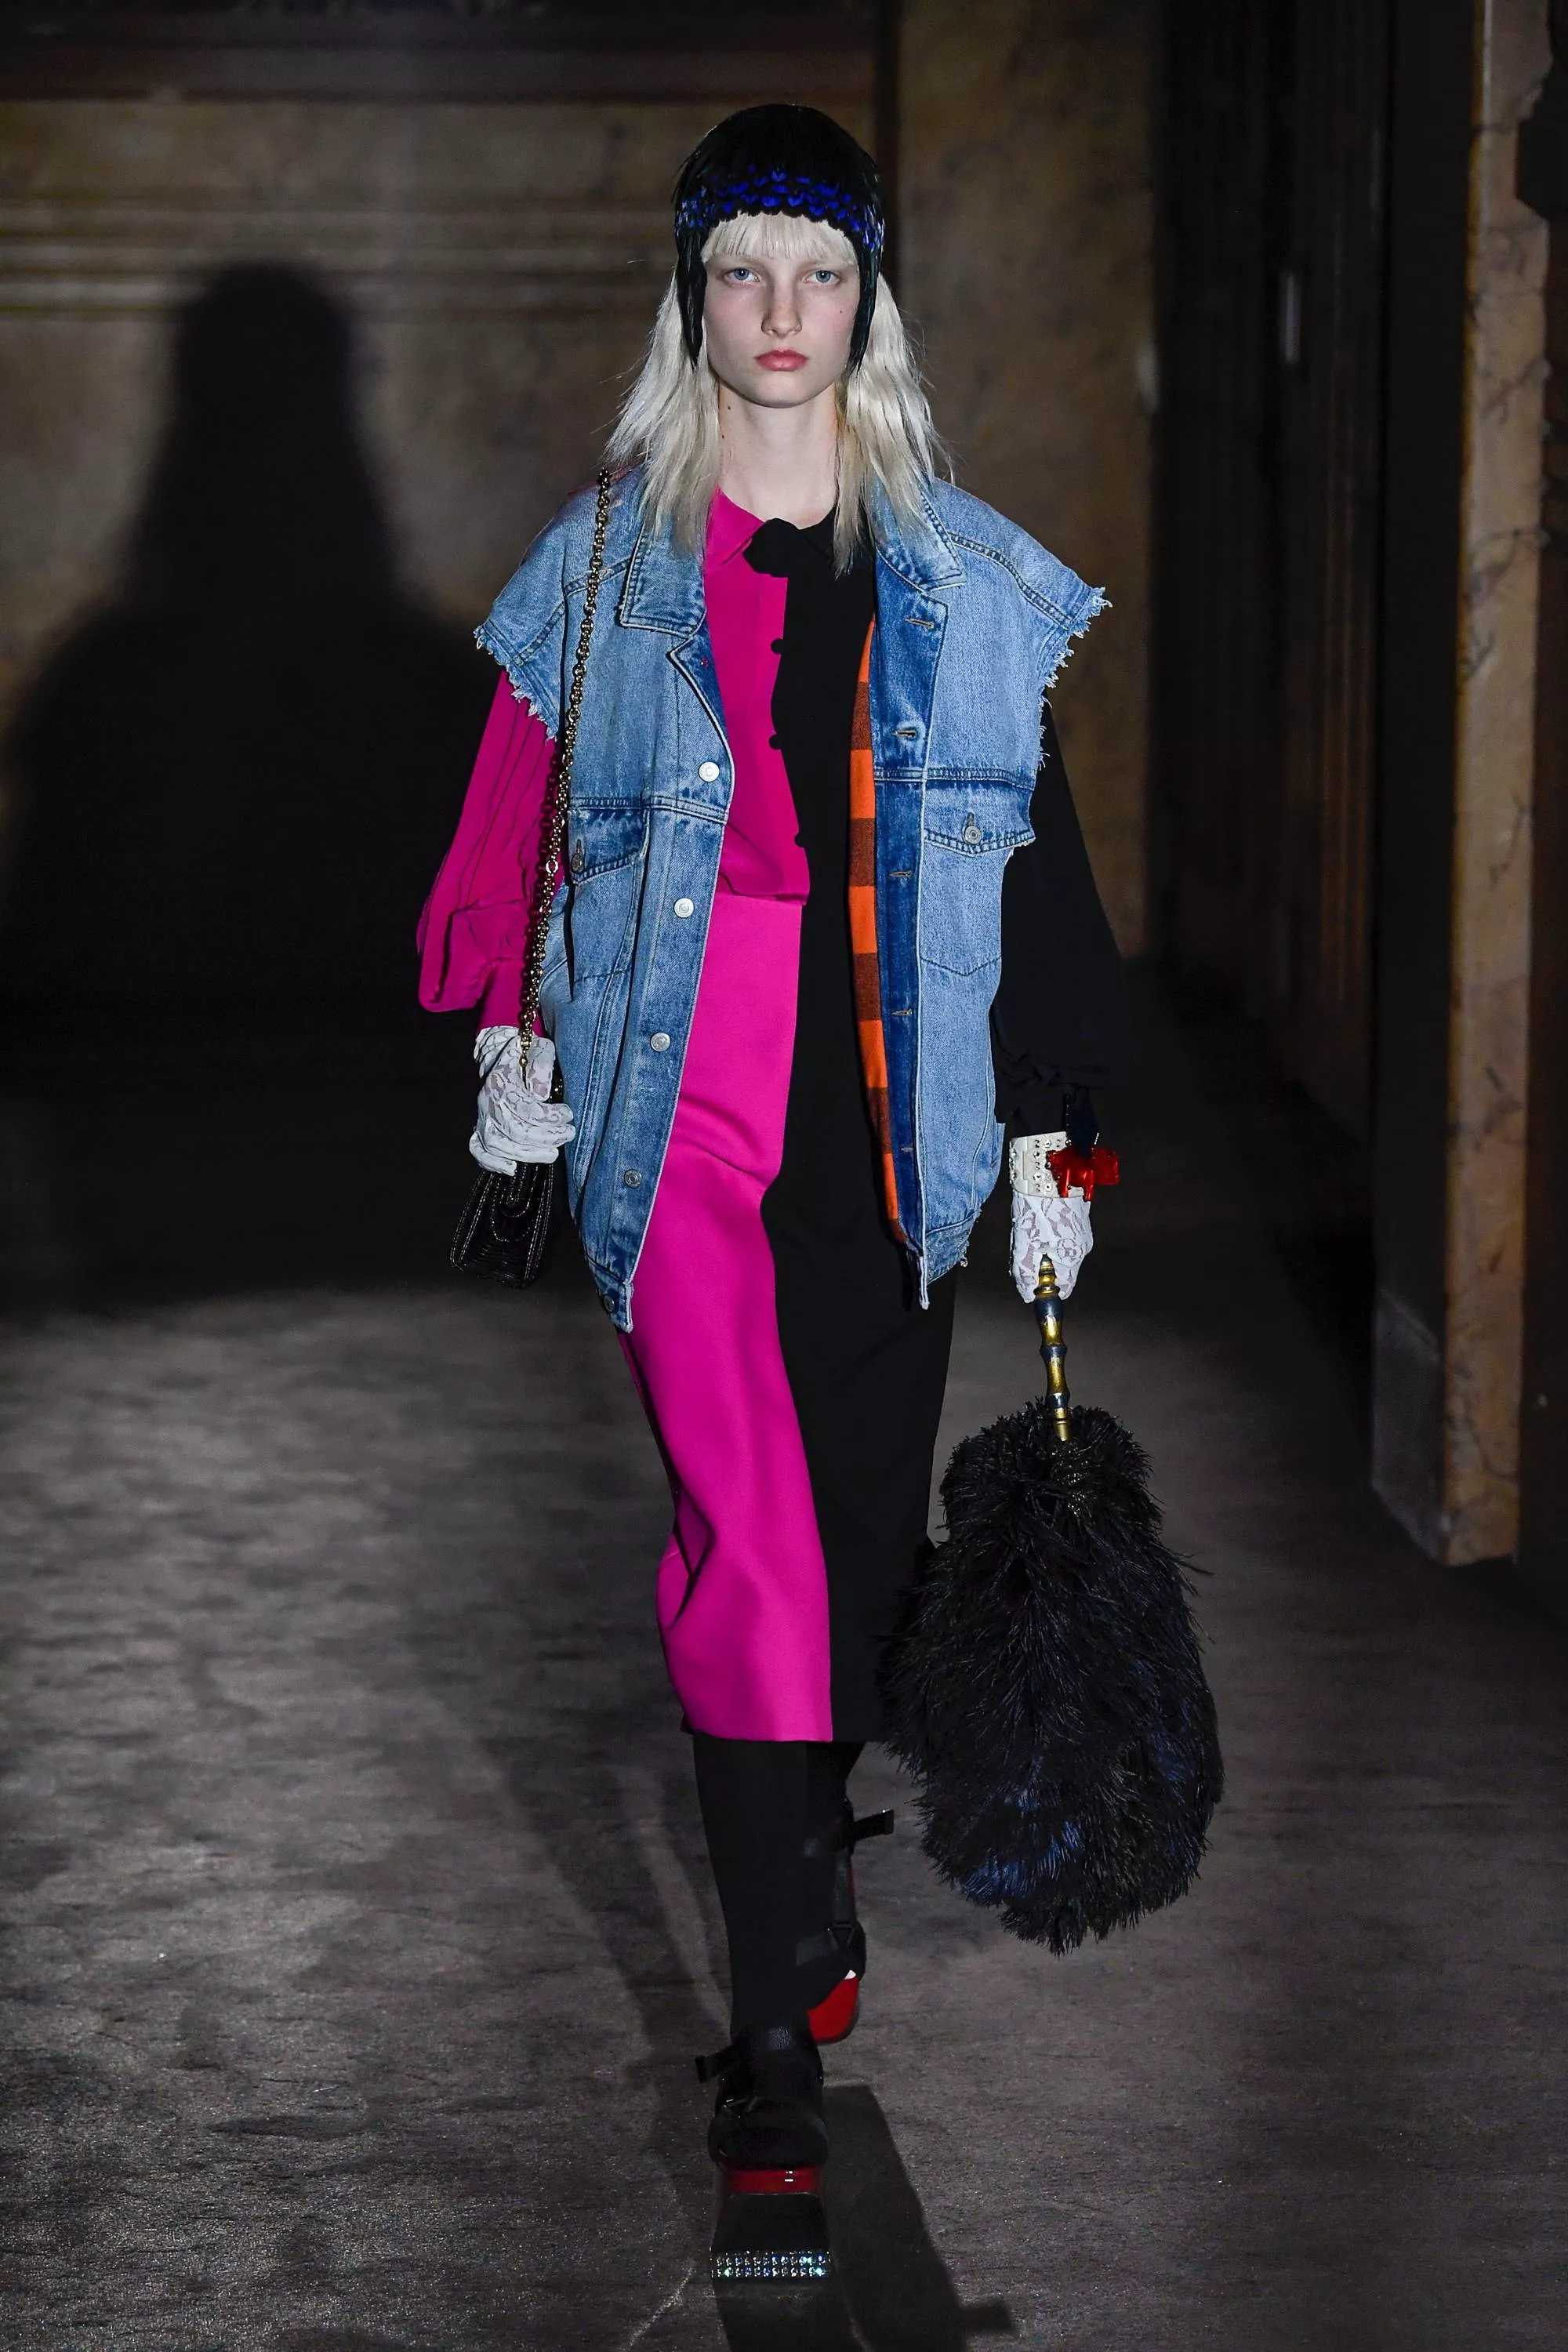 عرض Gucci لربيع 2019 في أسبوع الموضة الباريسيّ: ازدواجيّة في الأسلوب بين الكاجوال والمنمّق